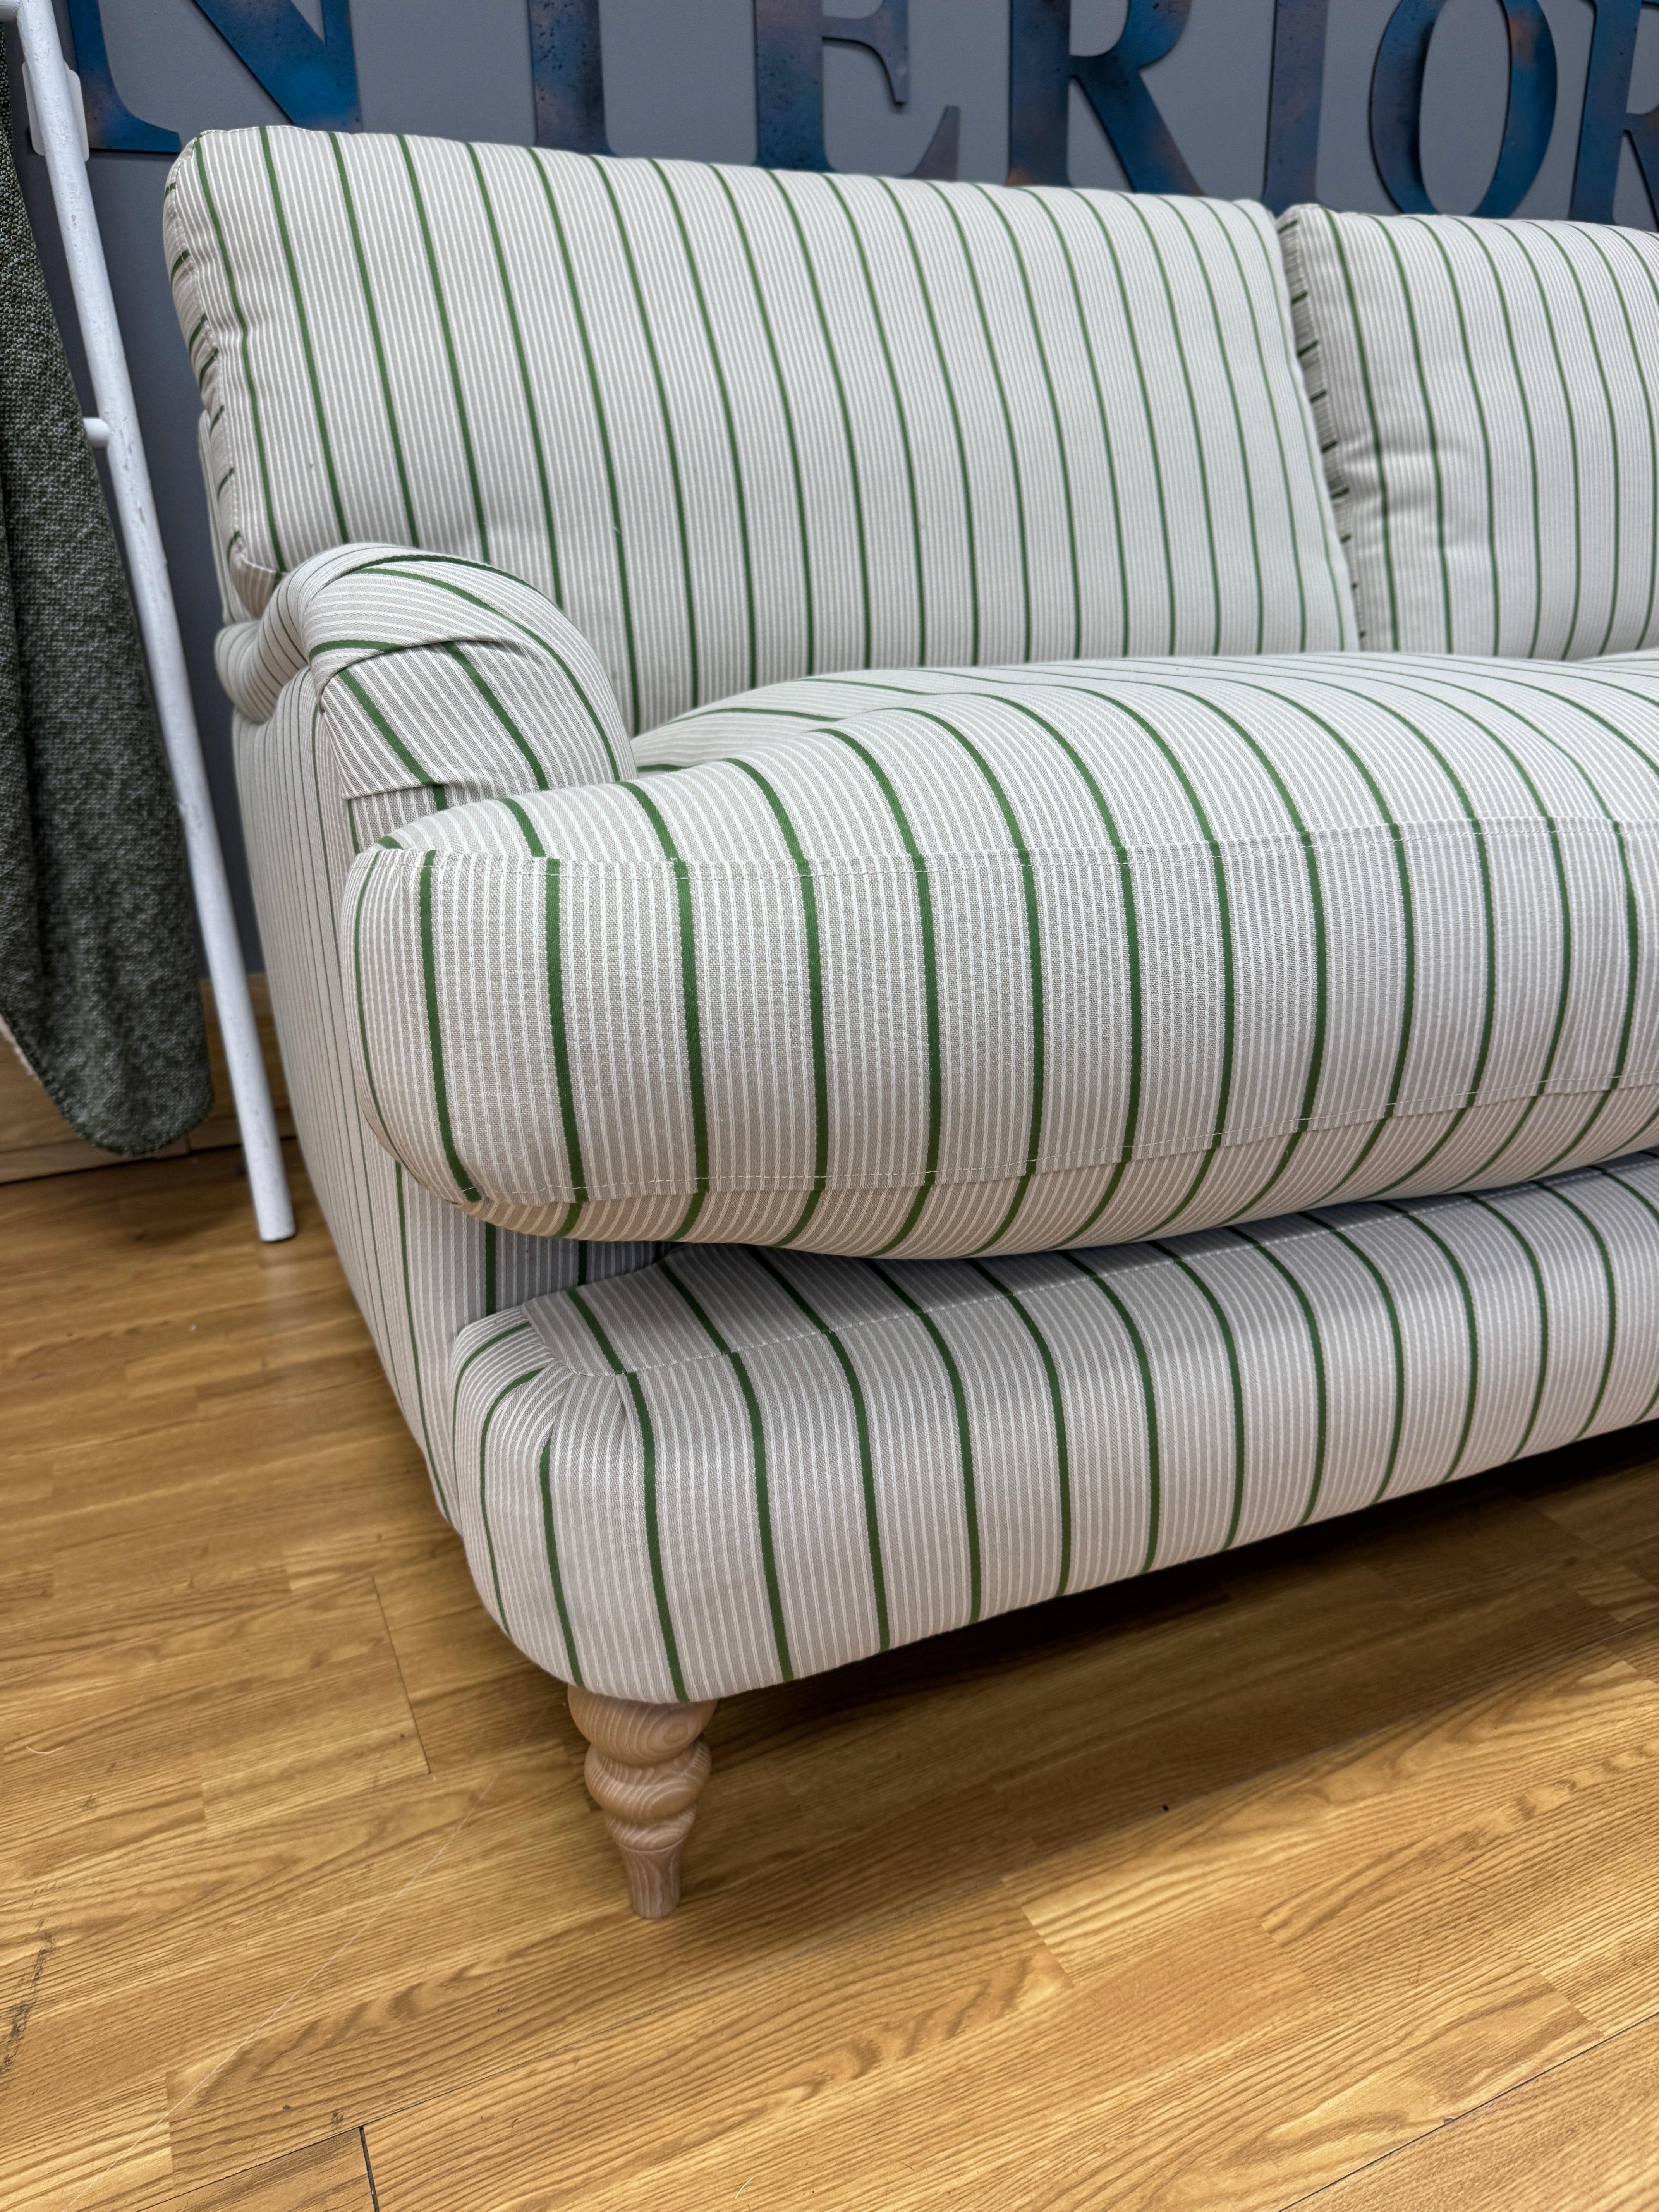 JOHN LEWIS OTLEY 3 seater sofa in Ticking Stripe Green fabric